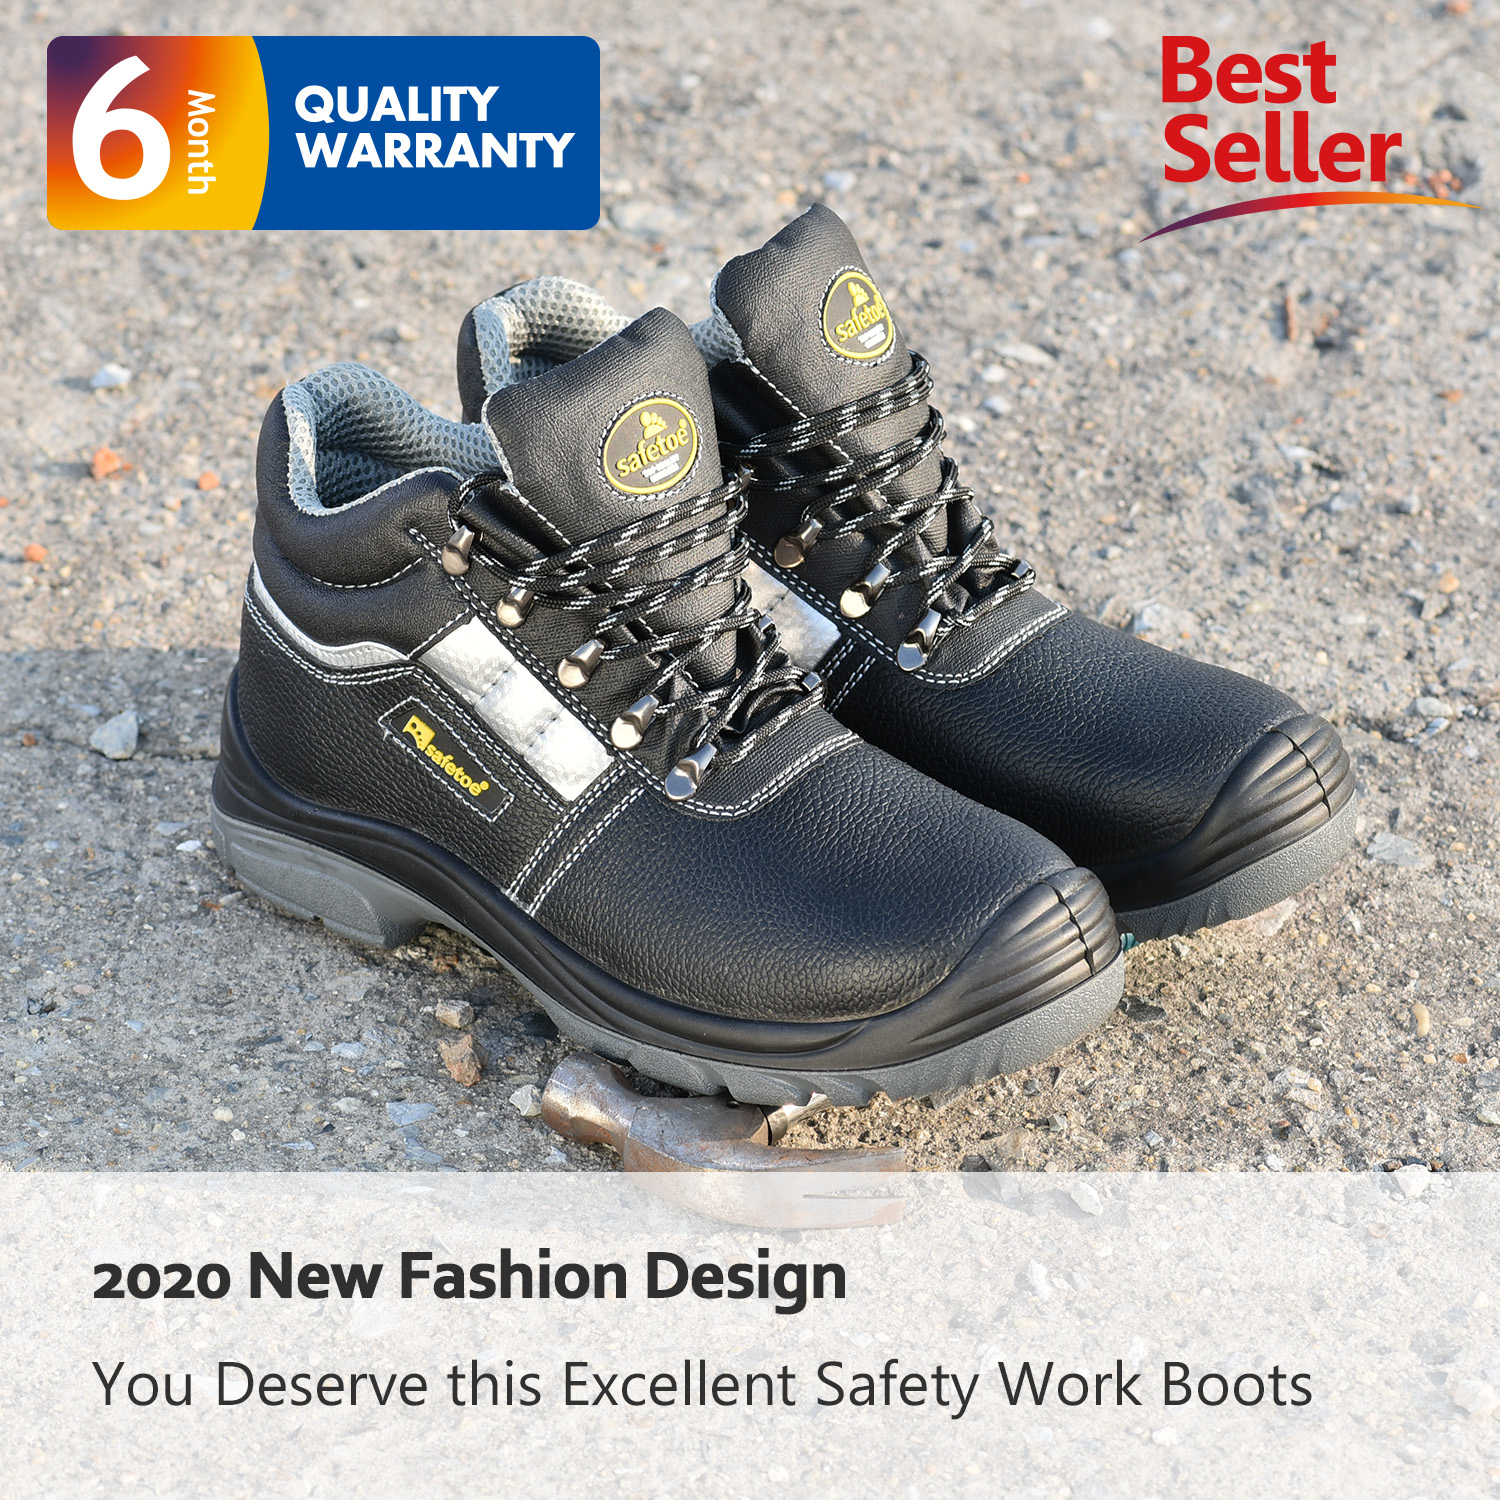 Zapatos de seguridad resistentes al agua para trabajo pesado S3 M-8027